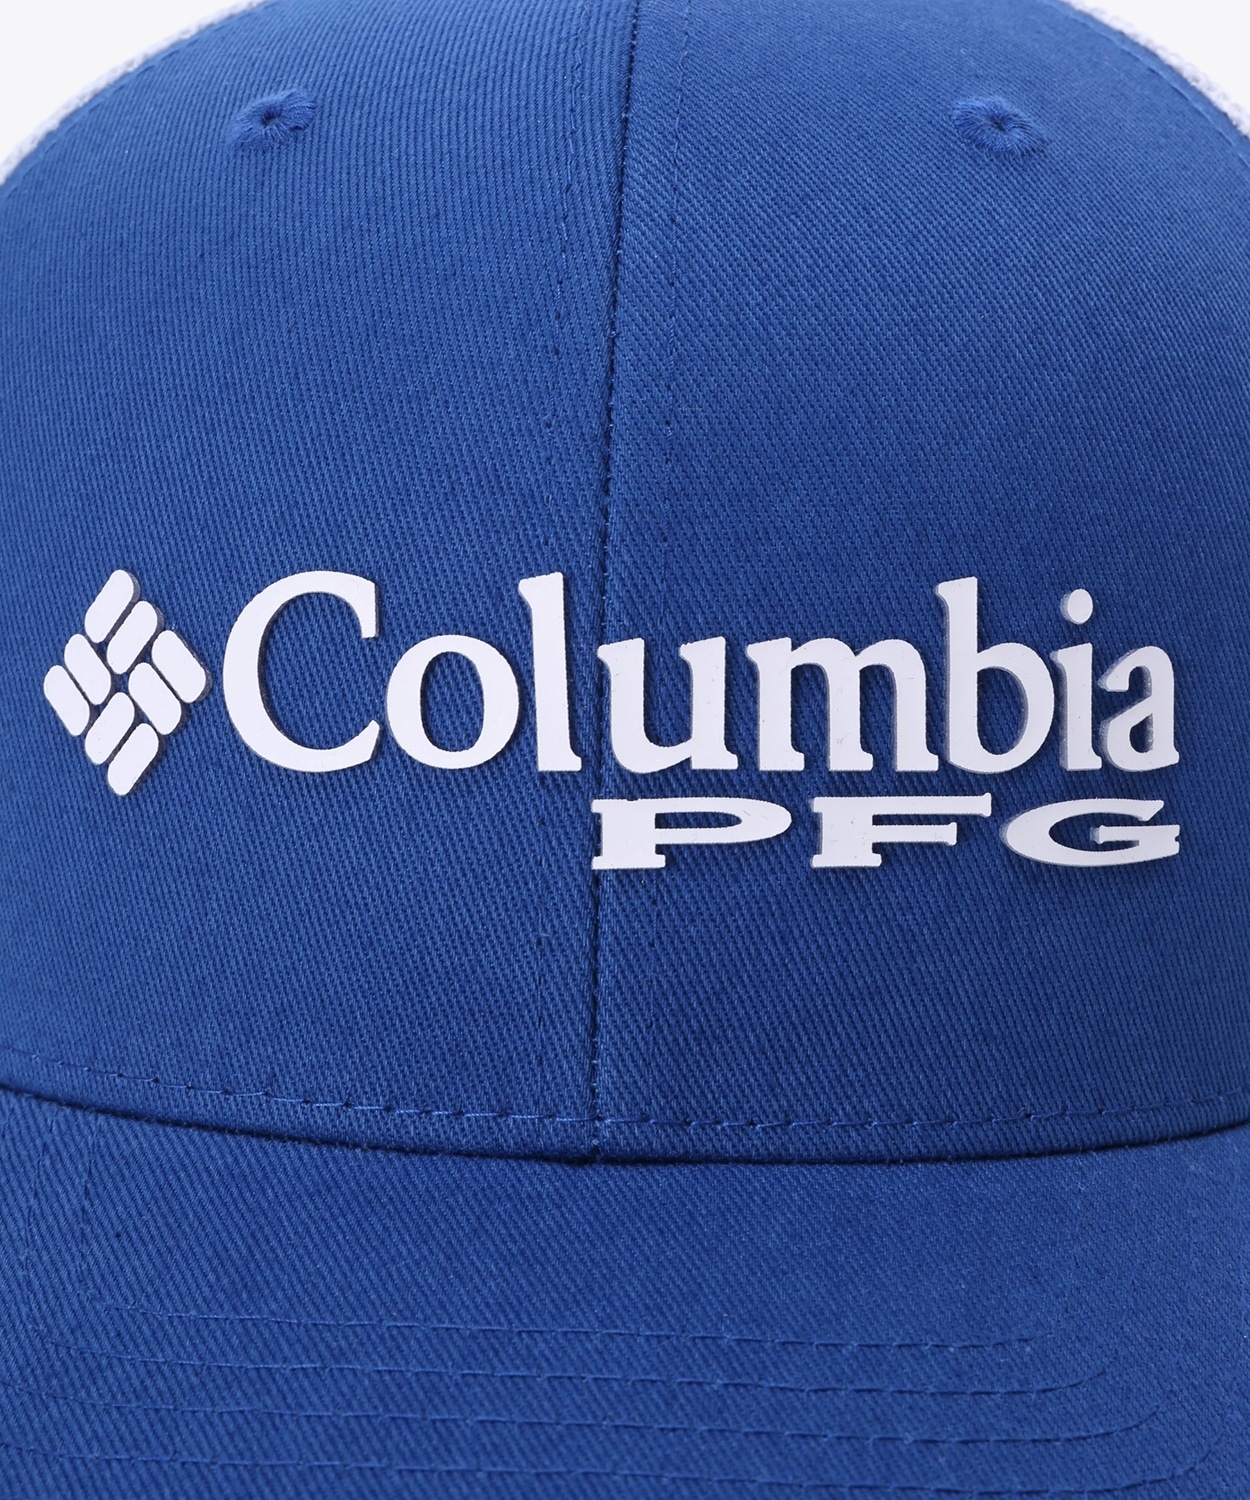 1884円 商舗 コロンビア Columbia レディース キャップ スナップバック 帽子Collegiate Navy White PFG